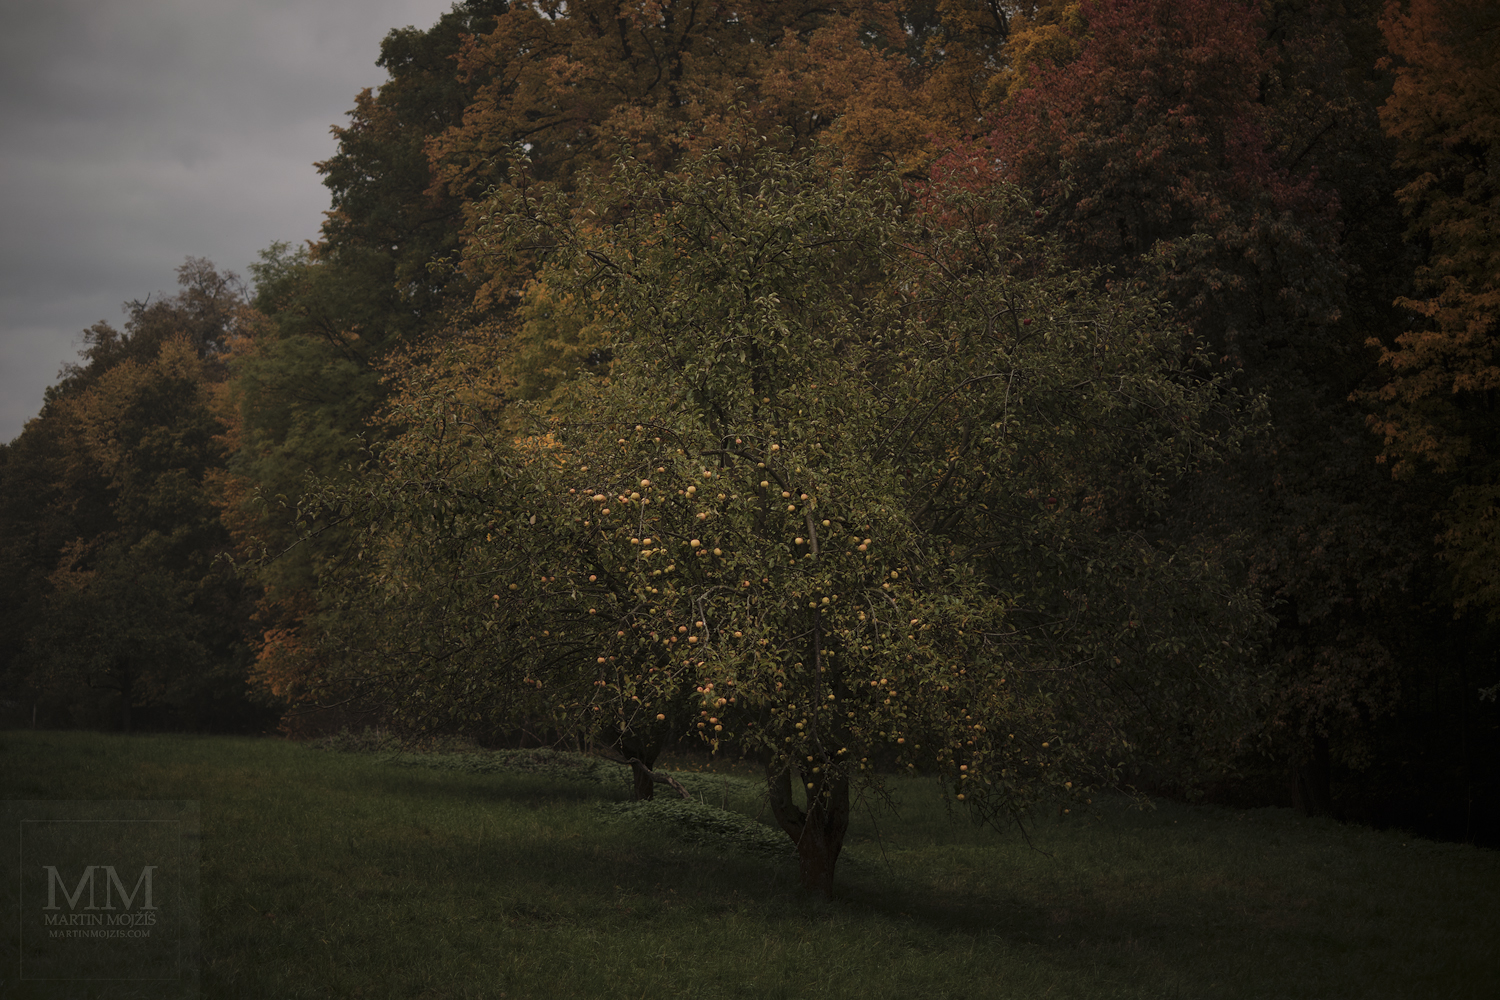 Umělecká velkoformátová fotografie Tichý podzim u zámeckého parku. Fotograf Martin Mojžíš.